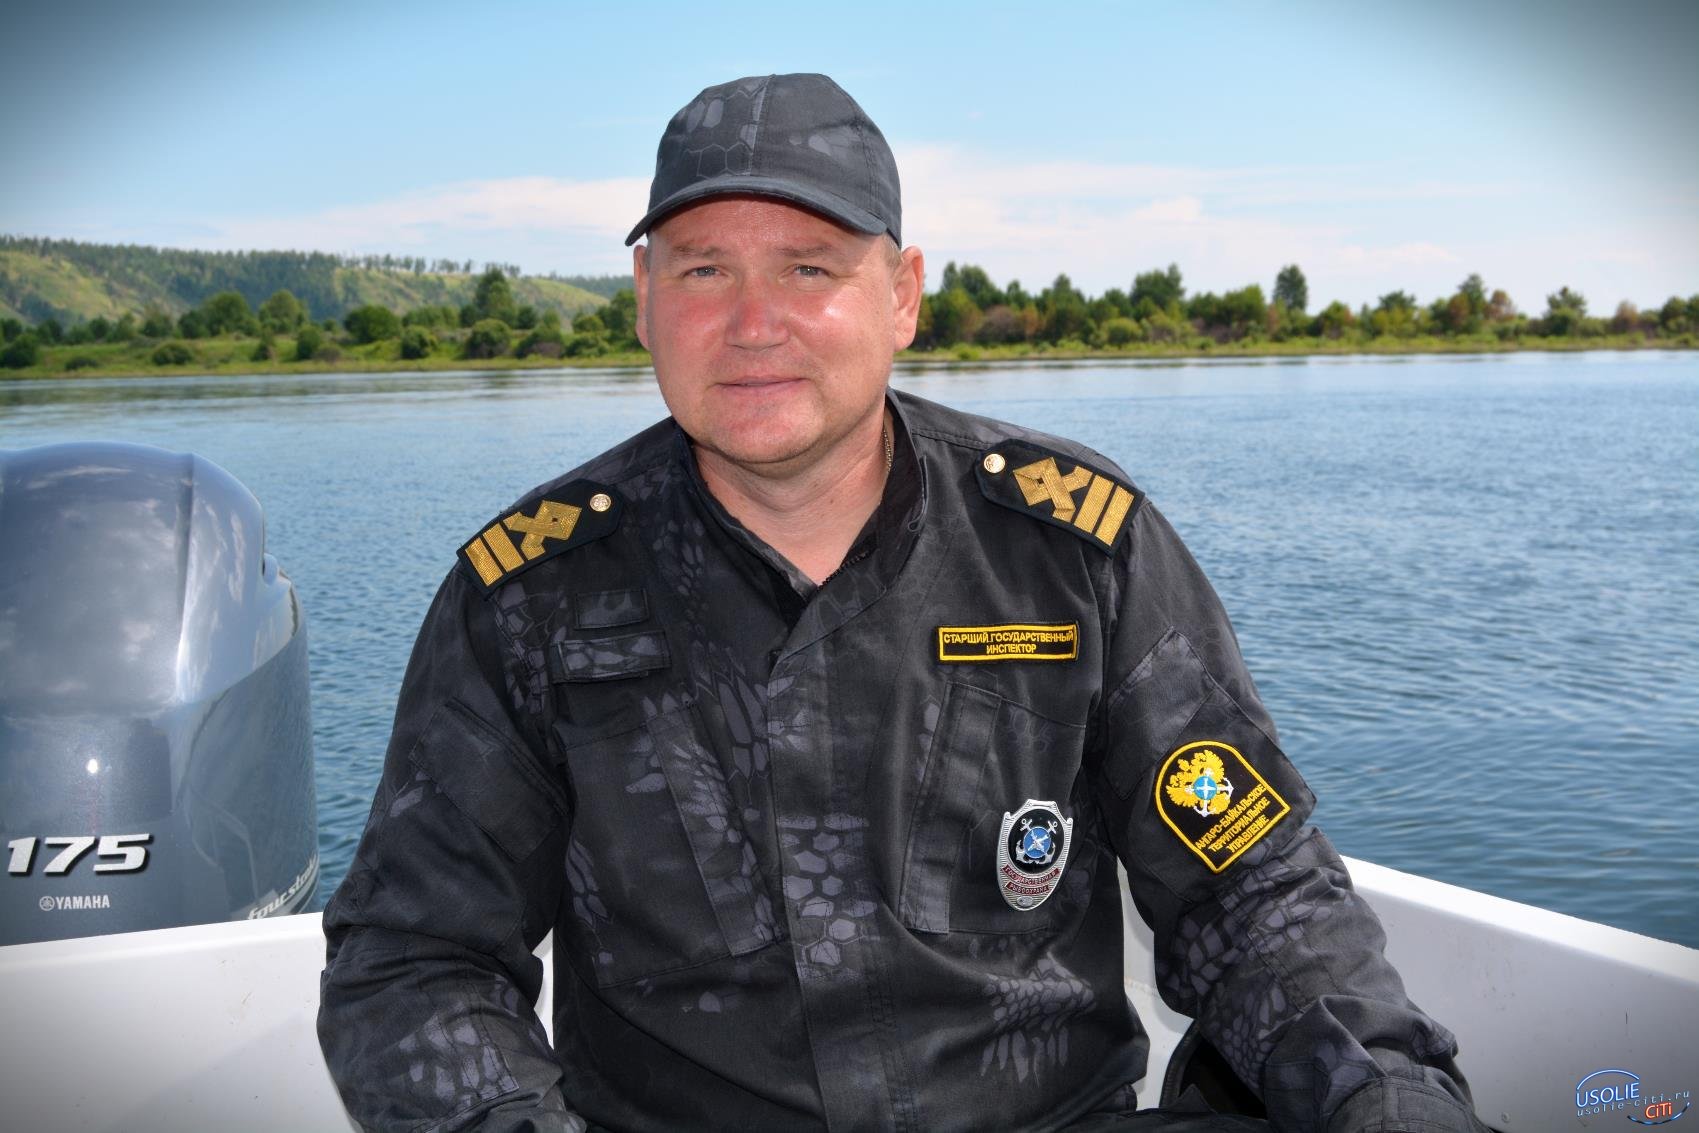 Сегодня день рождения отмечает начальник рыбнадзора Усолья Алексей Перепелкин